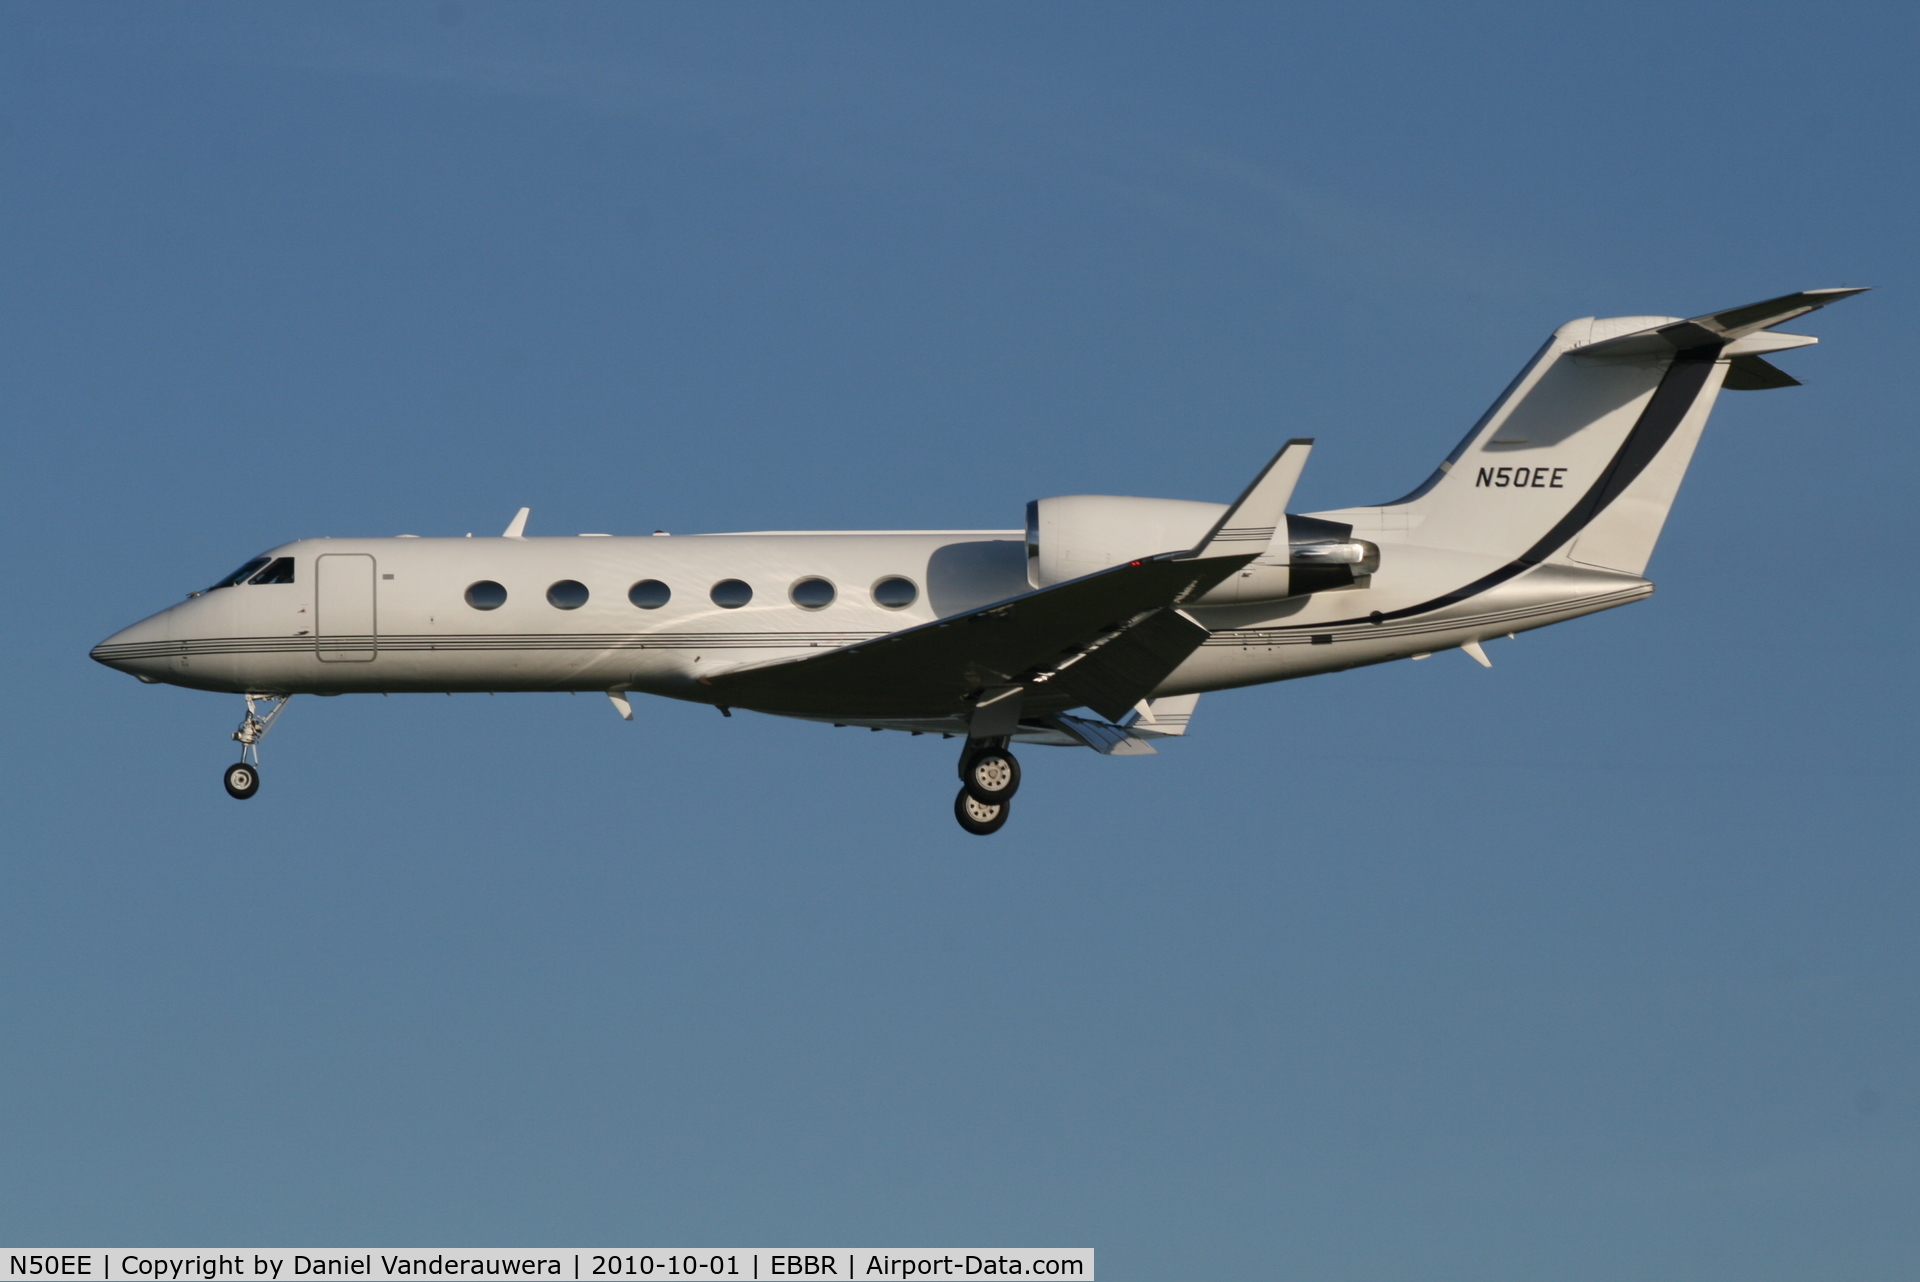 N50EE, 2002 Gulfstream Aerospace G-IV C/N 1500, Descending to RWY 25L